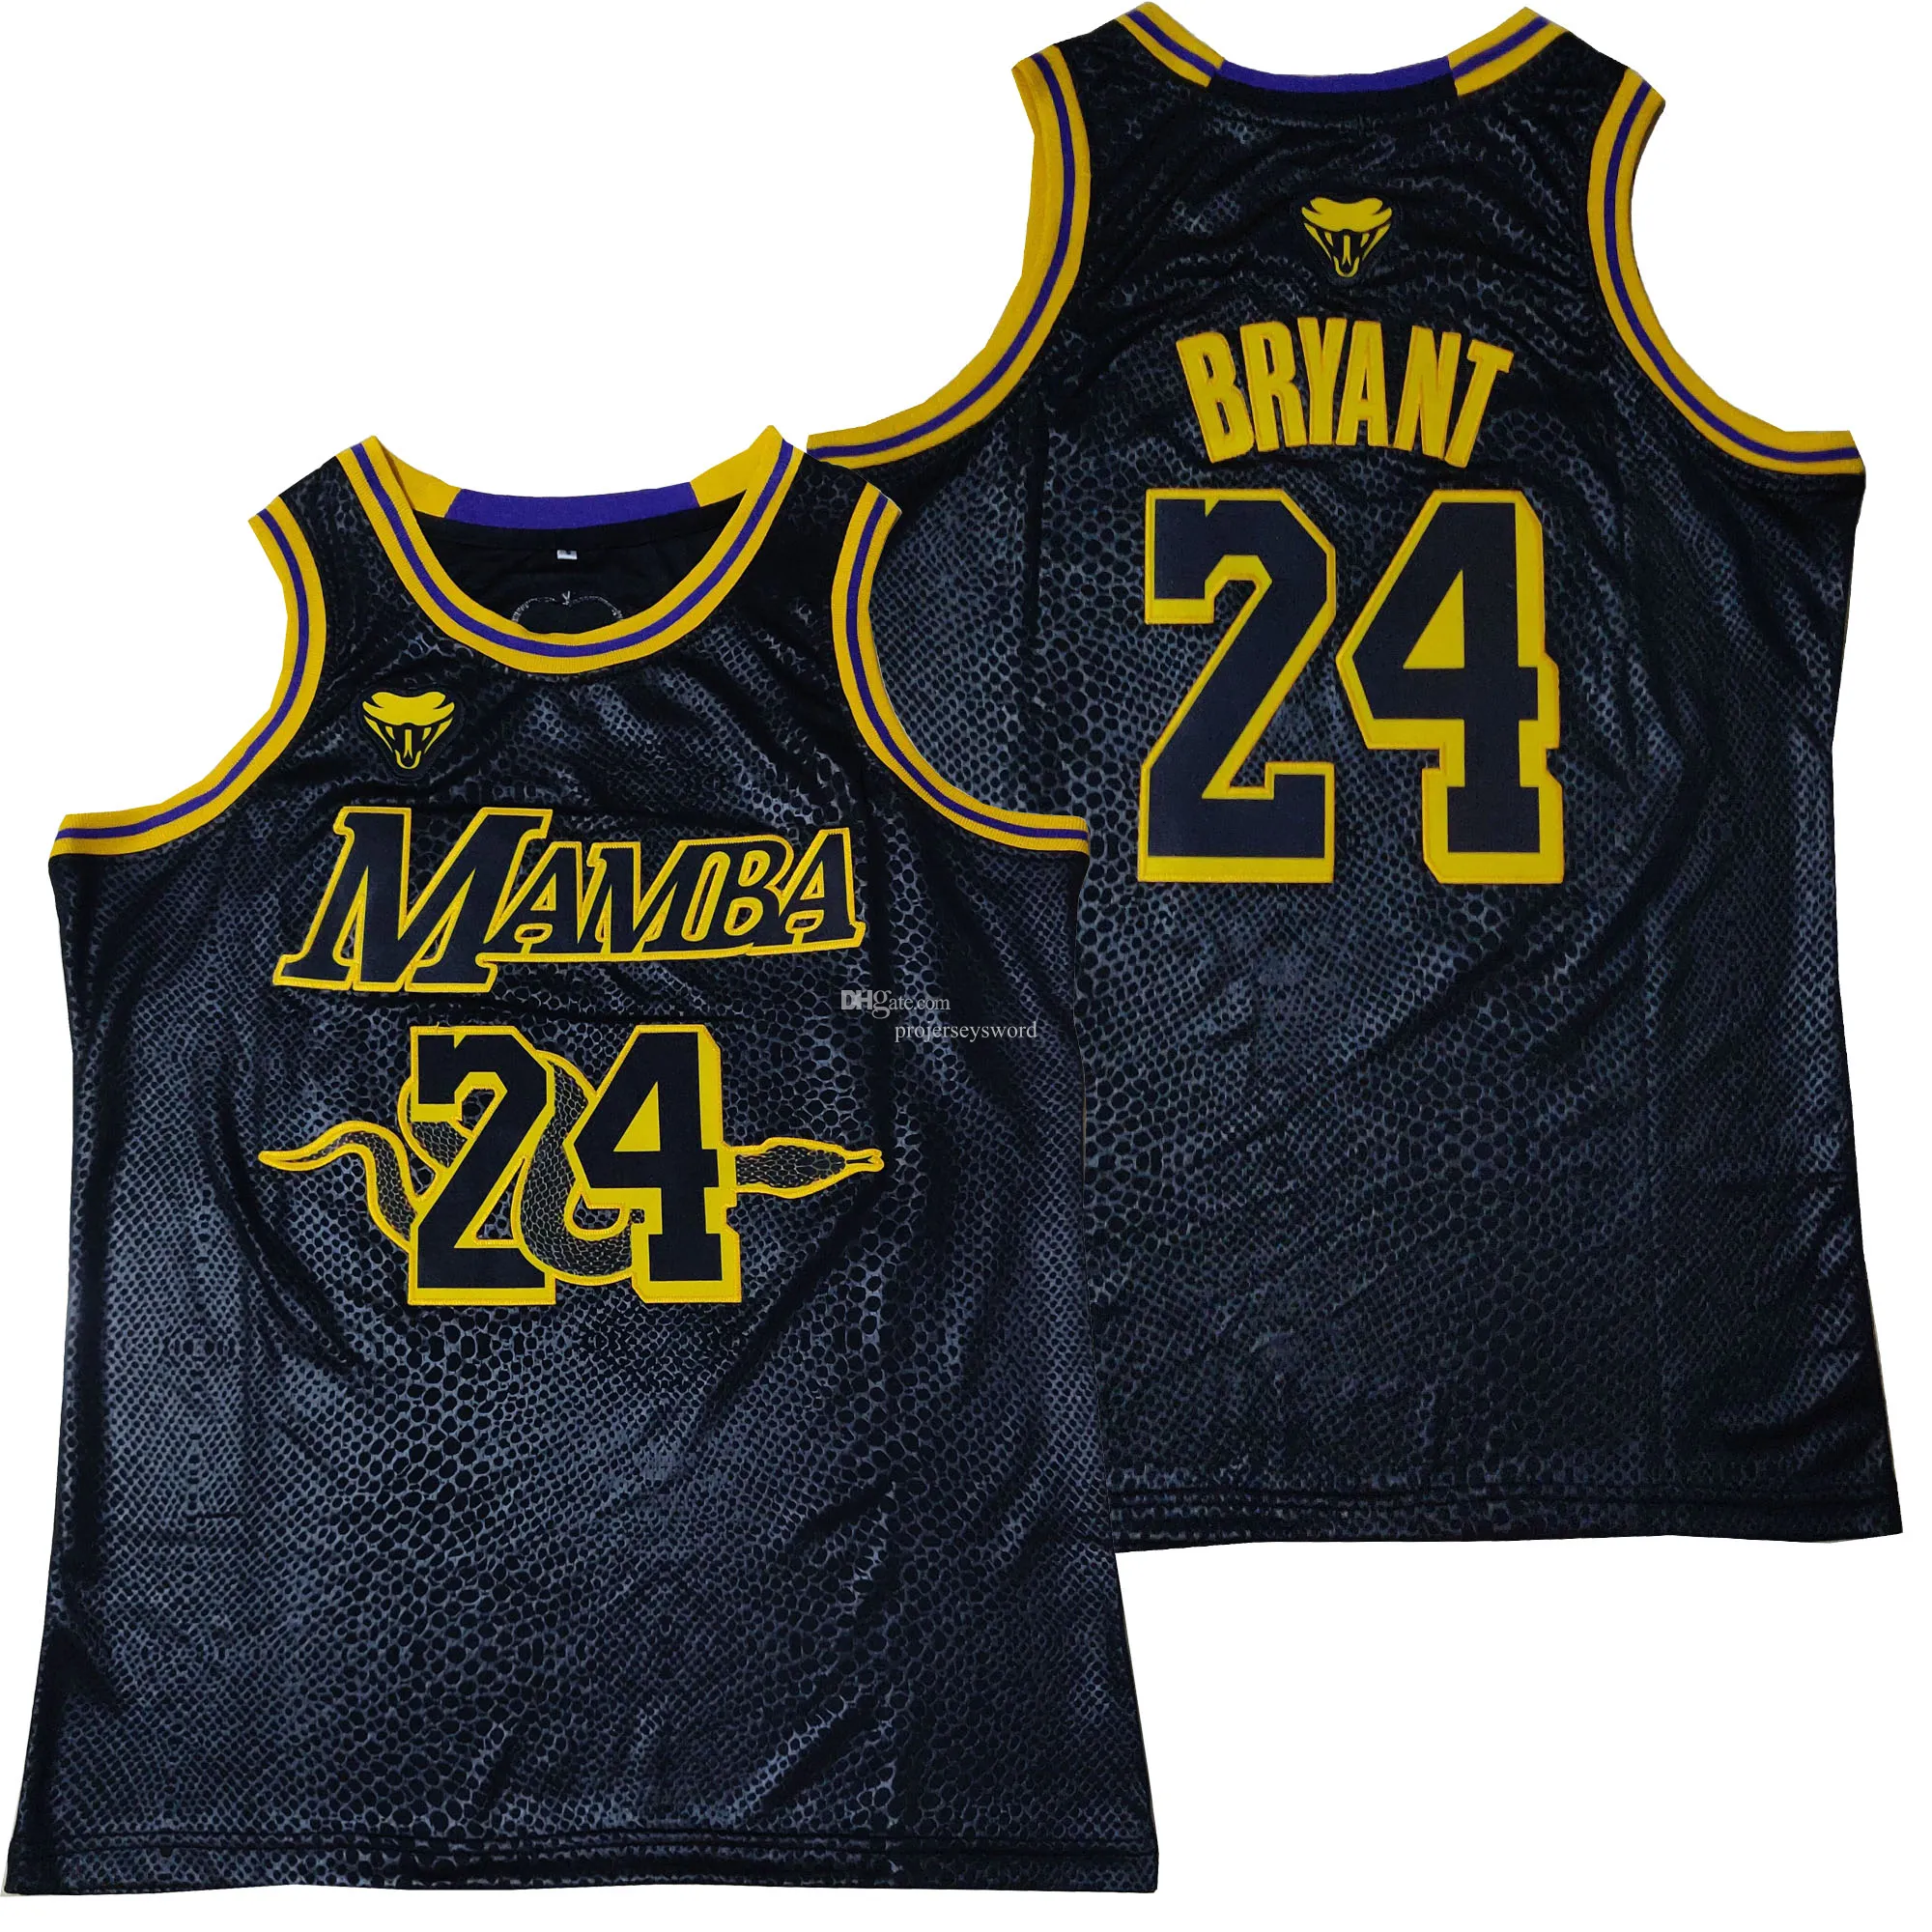 Mężczyźni 24 MABA Black Farewell Tribute Sports Shirt 90s Hip Hop Fashion Basketball Jersey S-XXXL